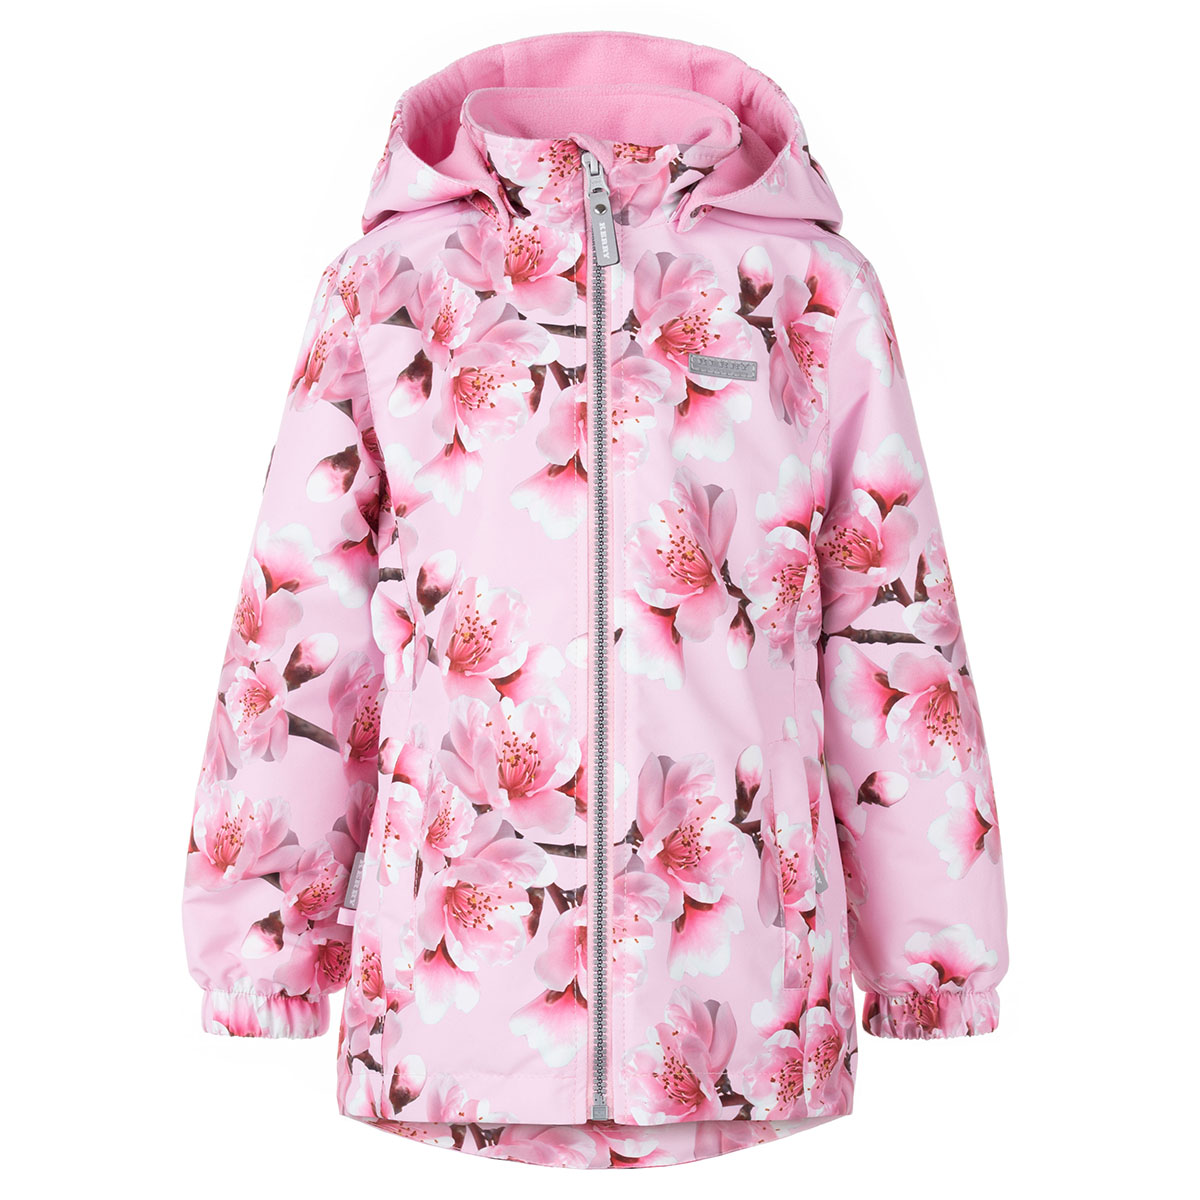 Куртка для девочек KERRY SUNNY K22025-1700 р. 122, цв. 1700-розовый с цв.ами